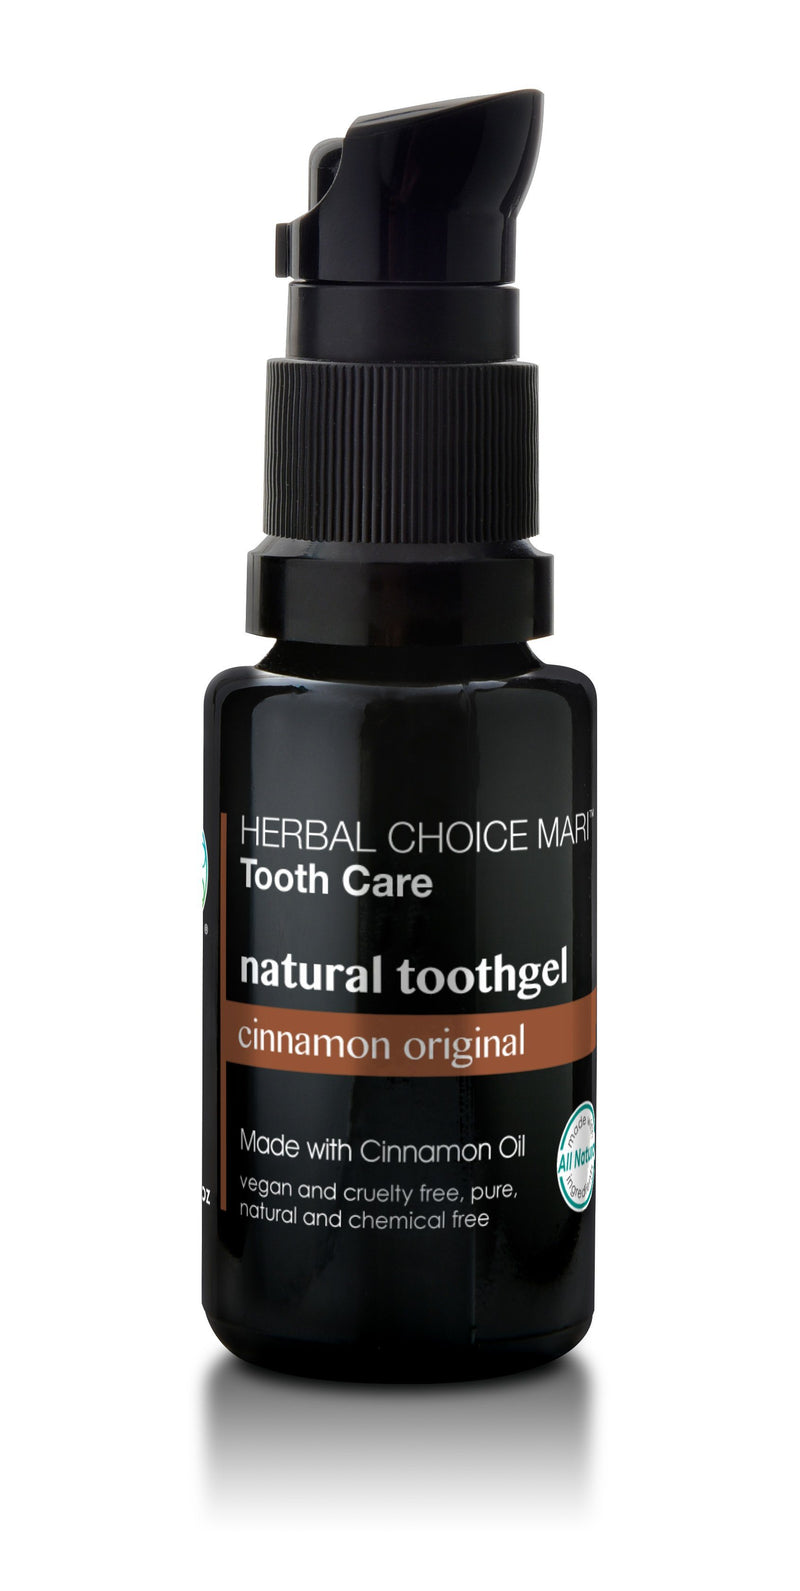 Herbal Choice Mari Natural Toothgel - Herbal Choice Mari Natural Toothgel - 0.5floz